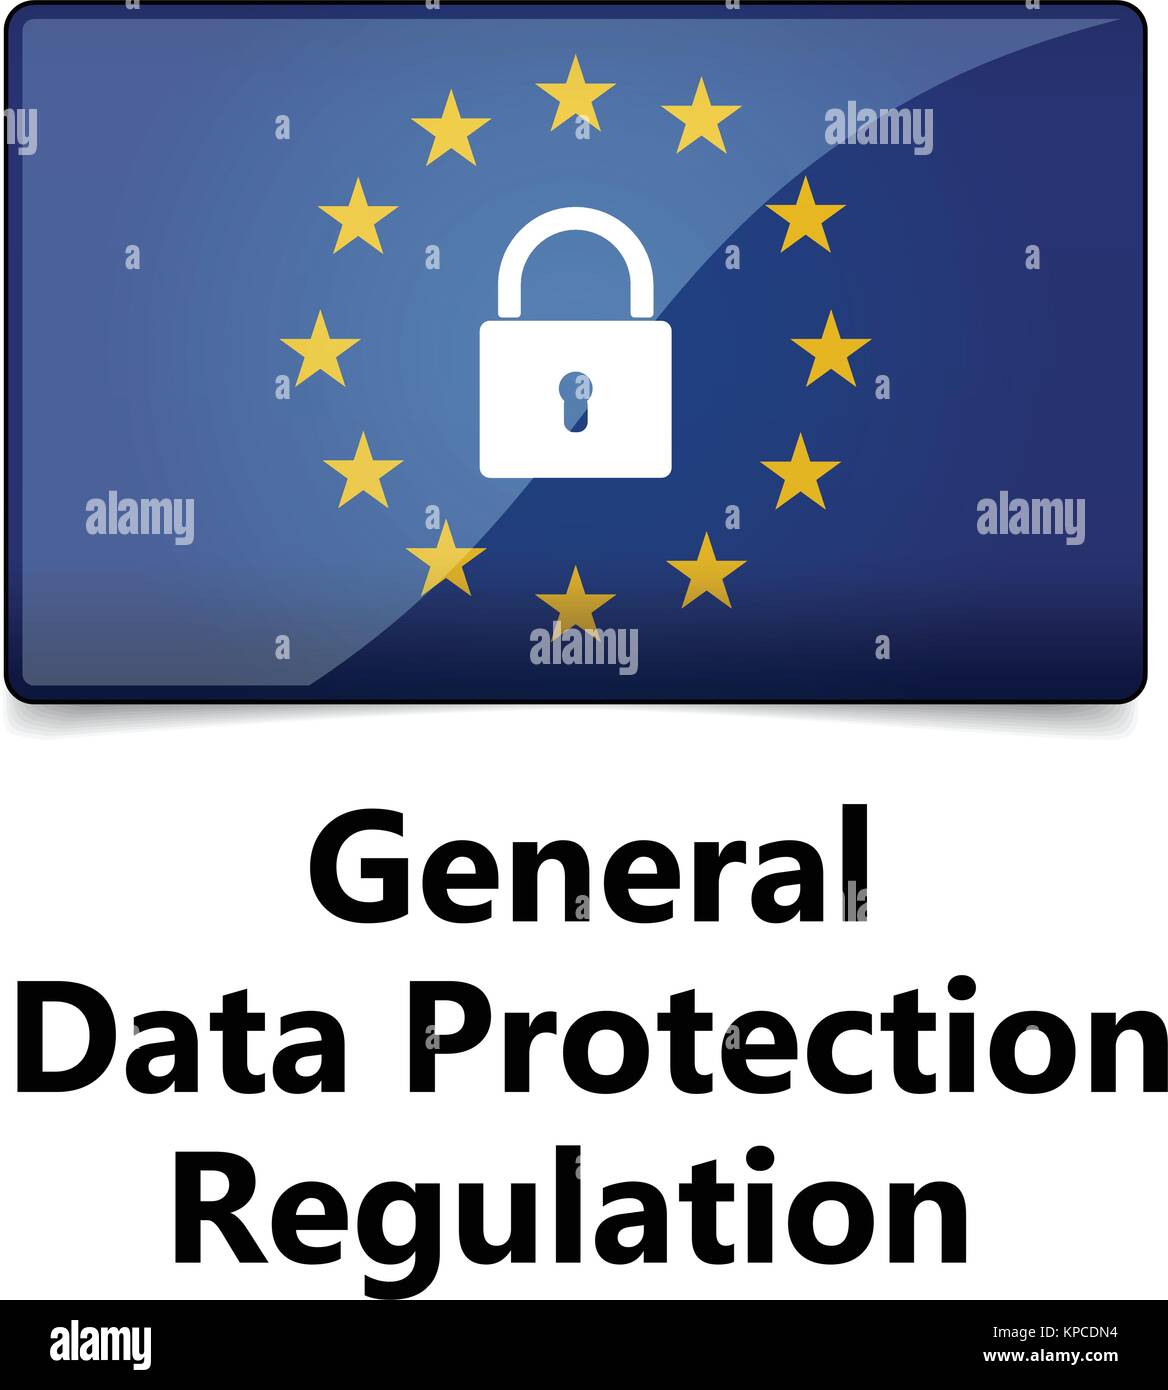 Pibr - Règlement général sur la protection des données. Illustration de Vecteur